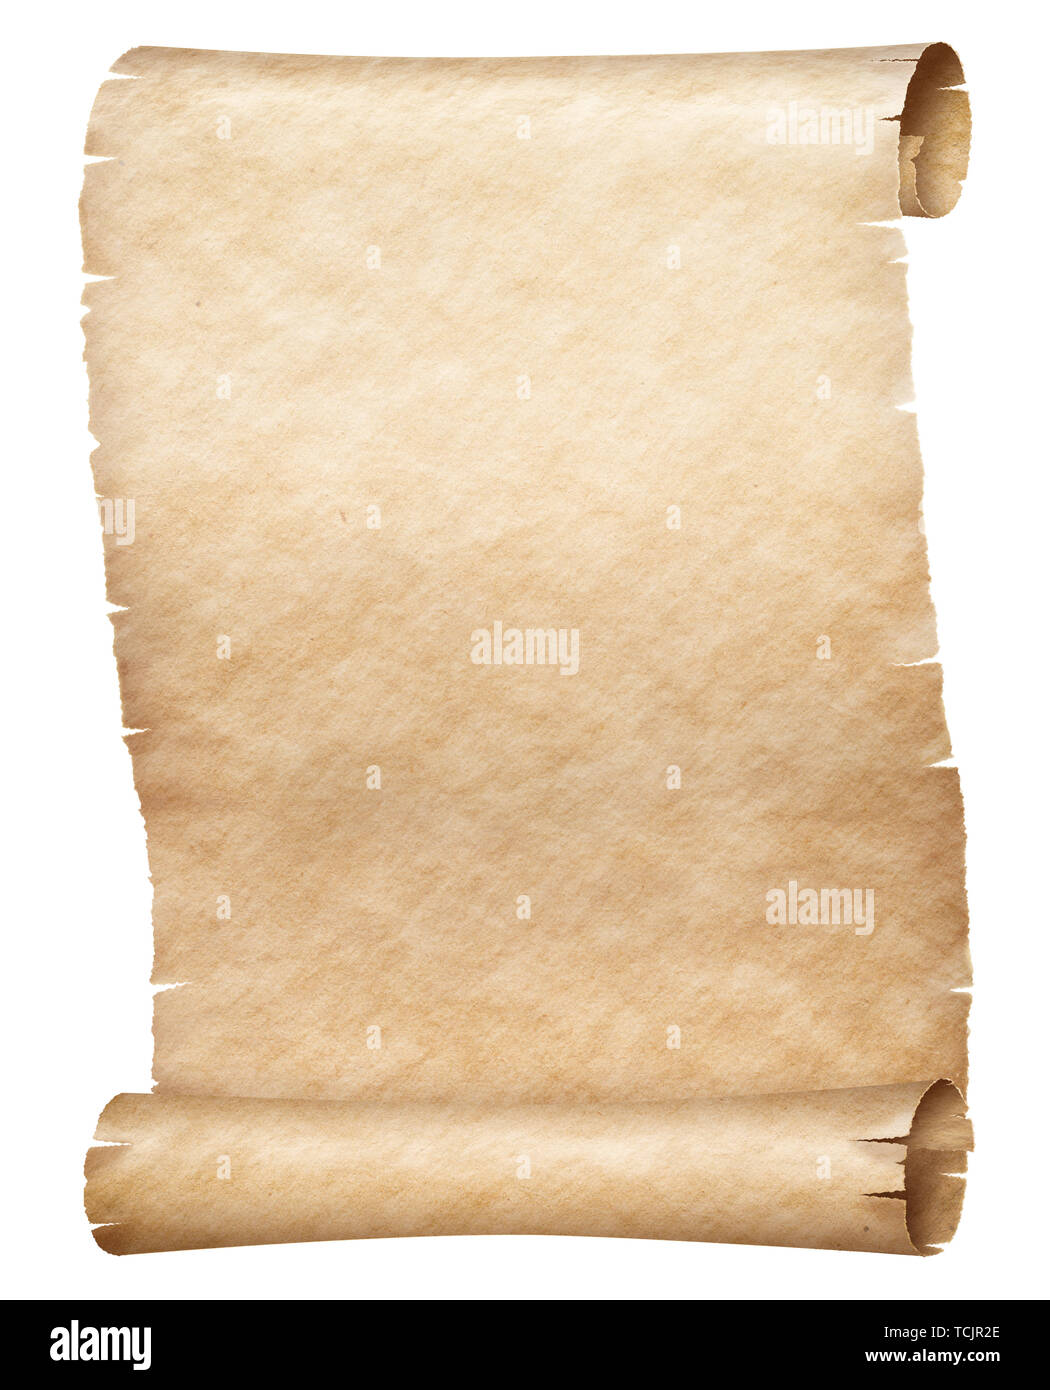 Пергамент береста бумага